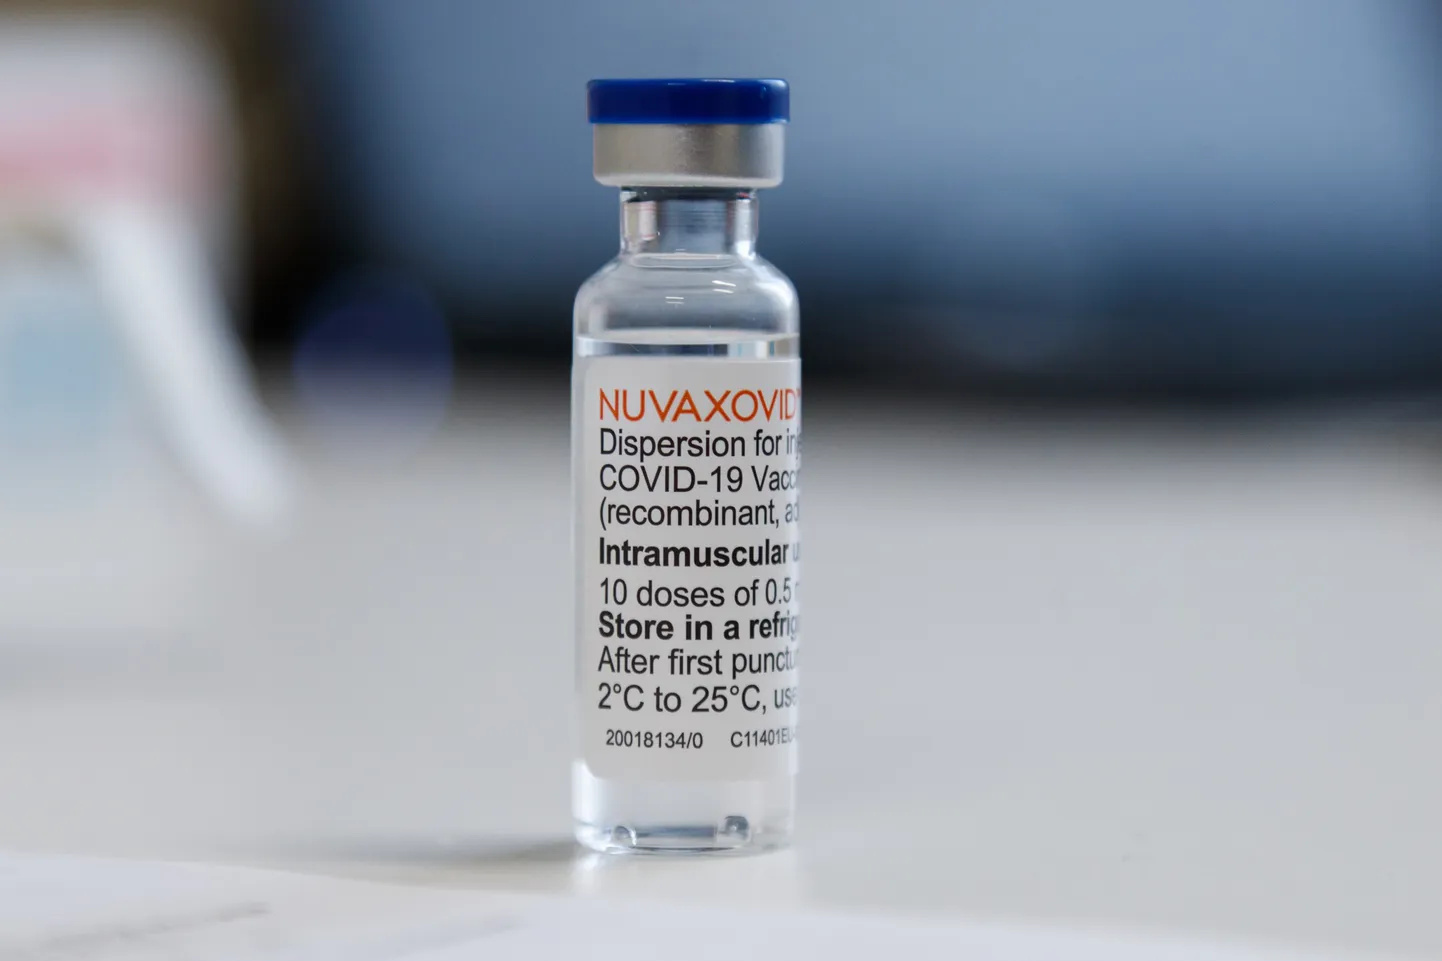 30.03.2022, Tallinn
Ettevõtja Rain Lõhmus sai esimese doosi COVID19 vaktsiini Nuvaxovid.
Foto Mihkel Maripuu, Postimees